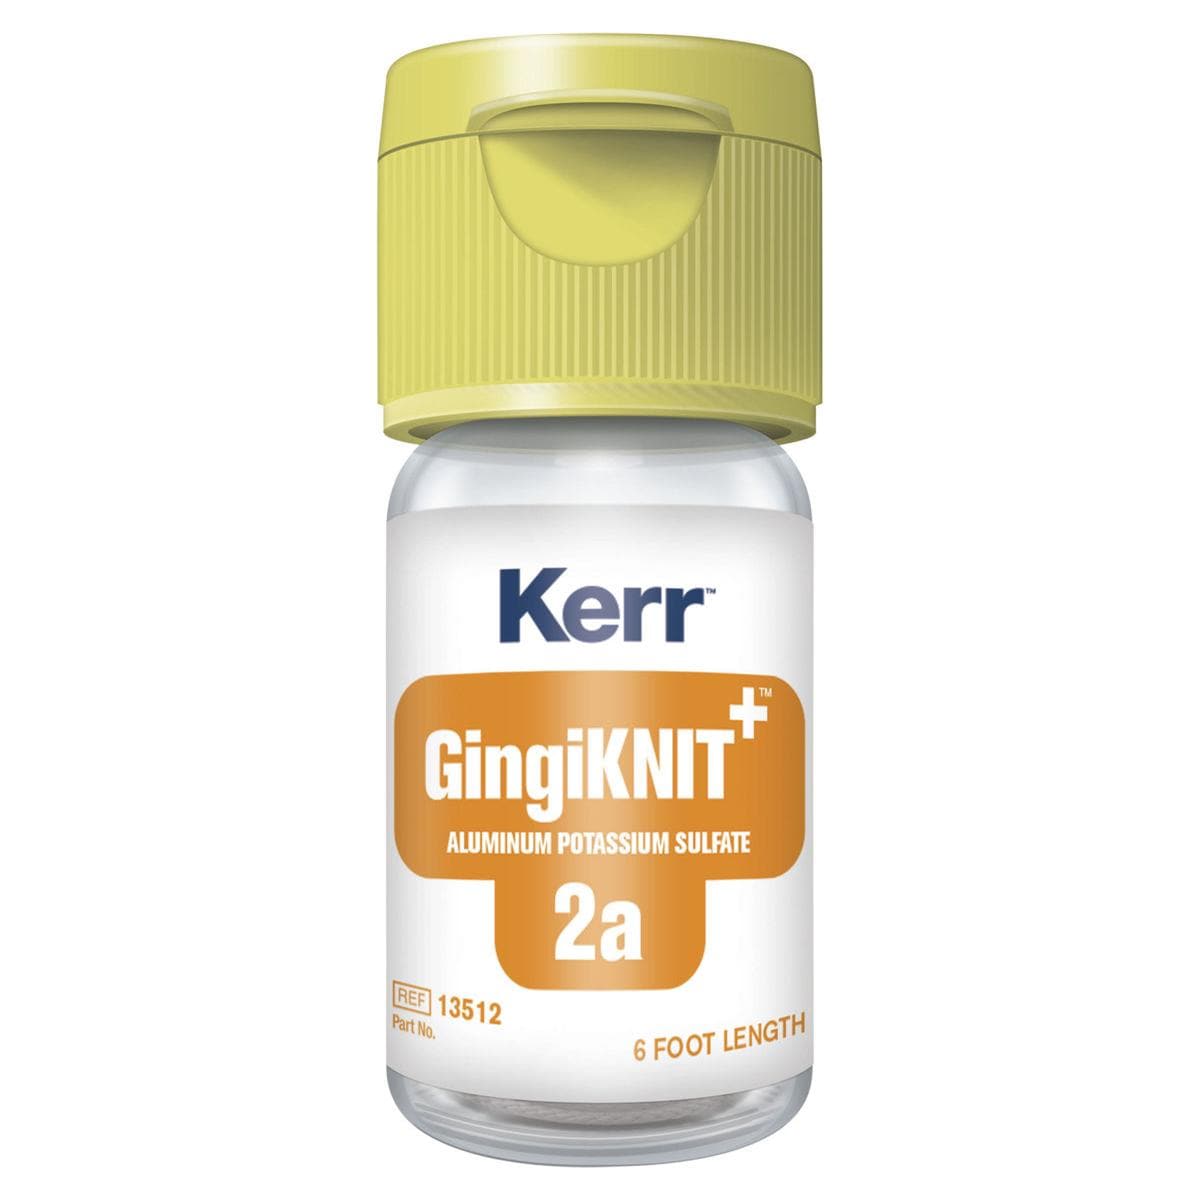 GingiKnit+ - Aluminium Potassium Sulfate - 2a